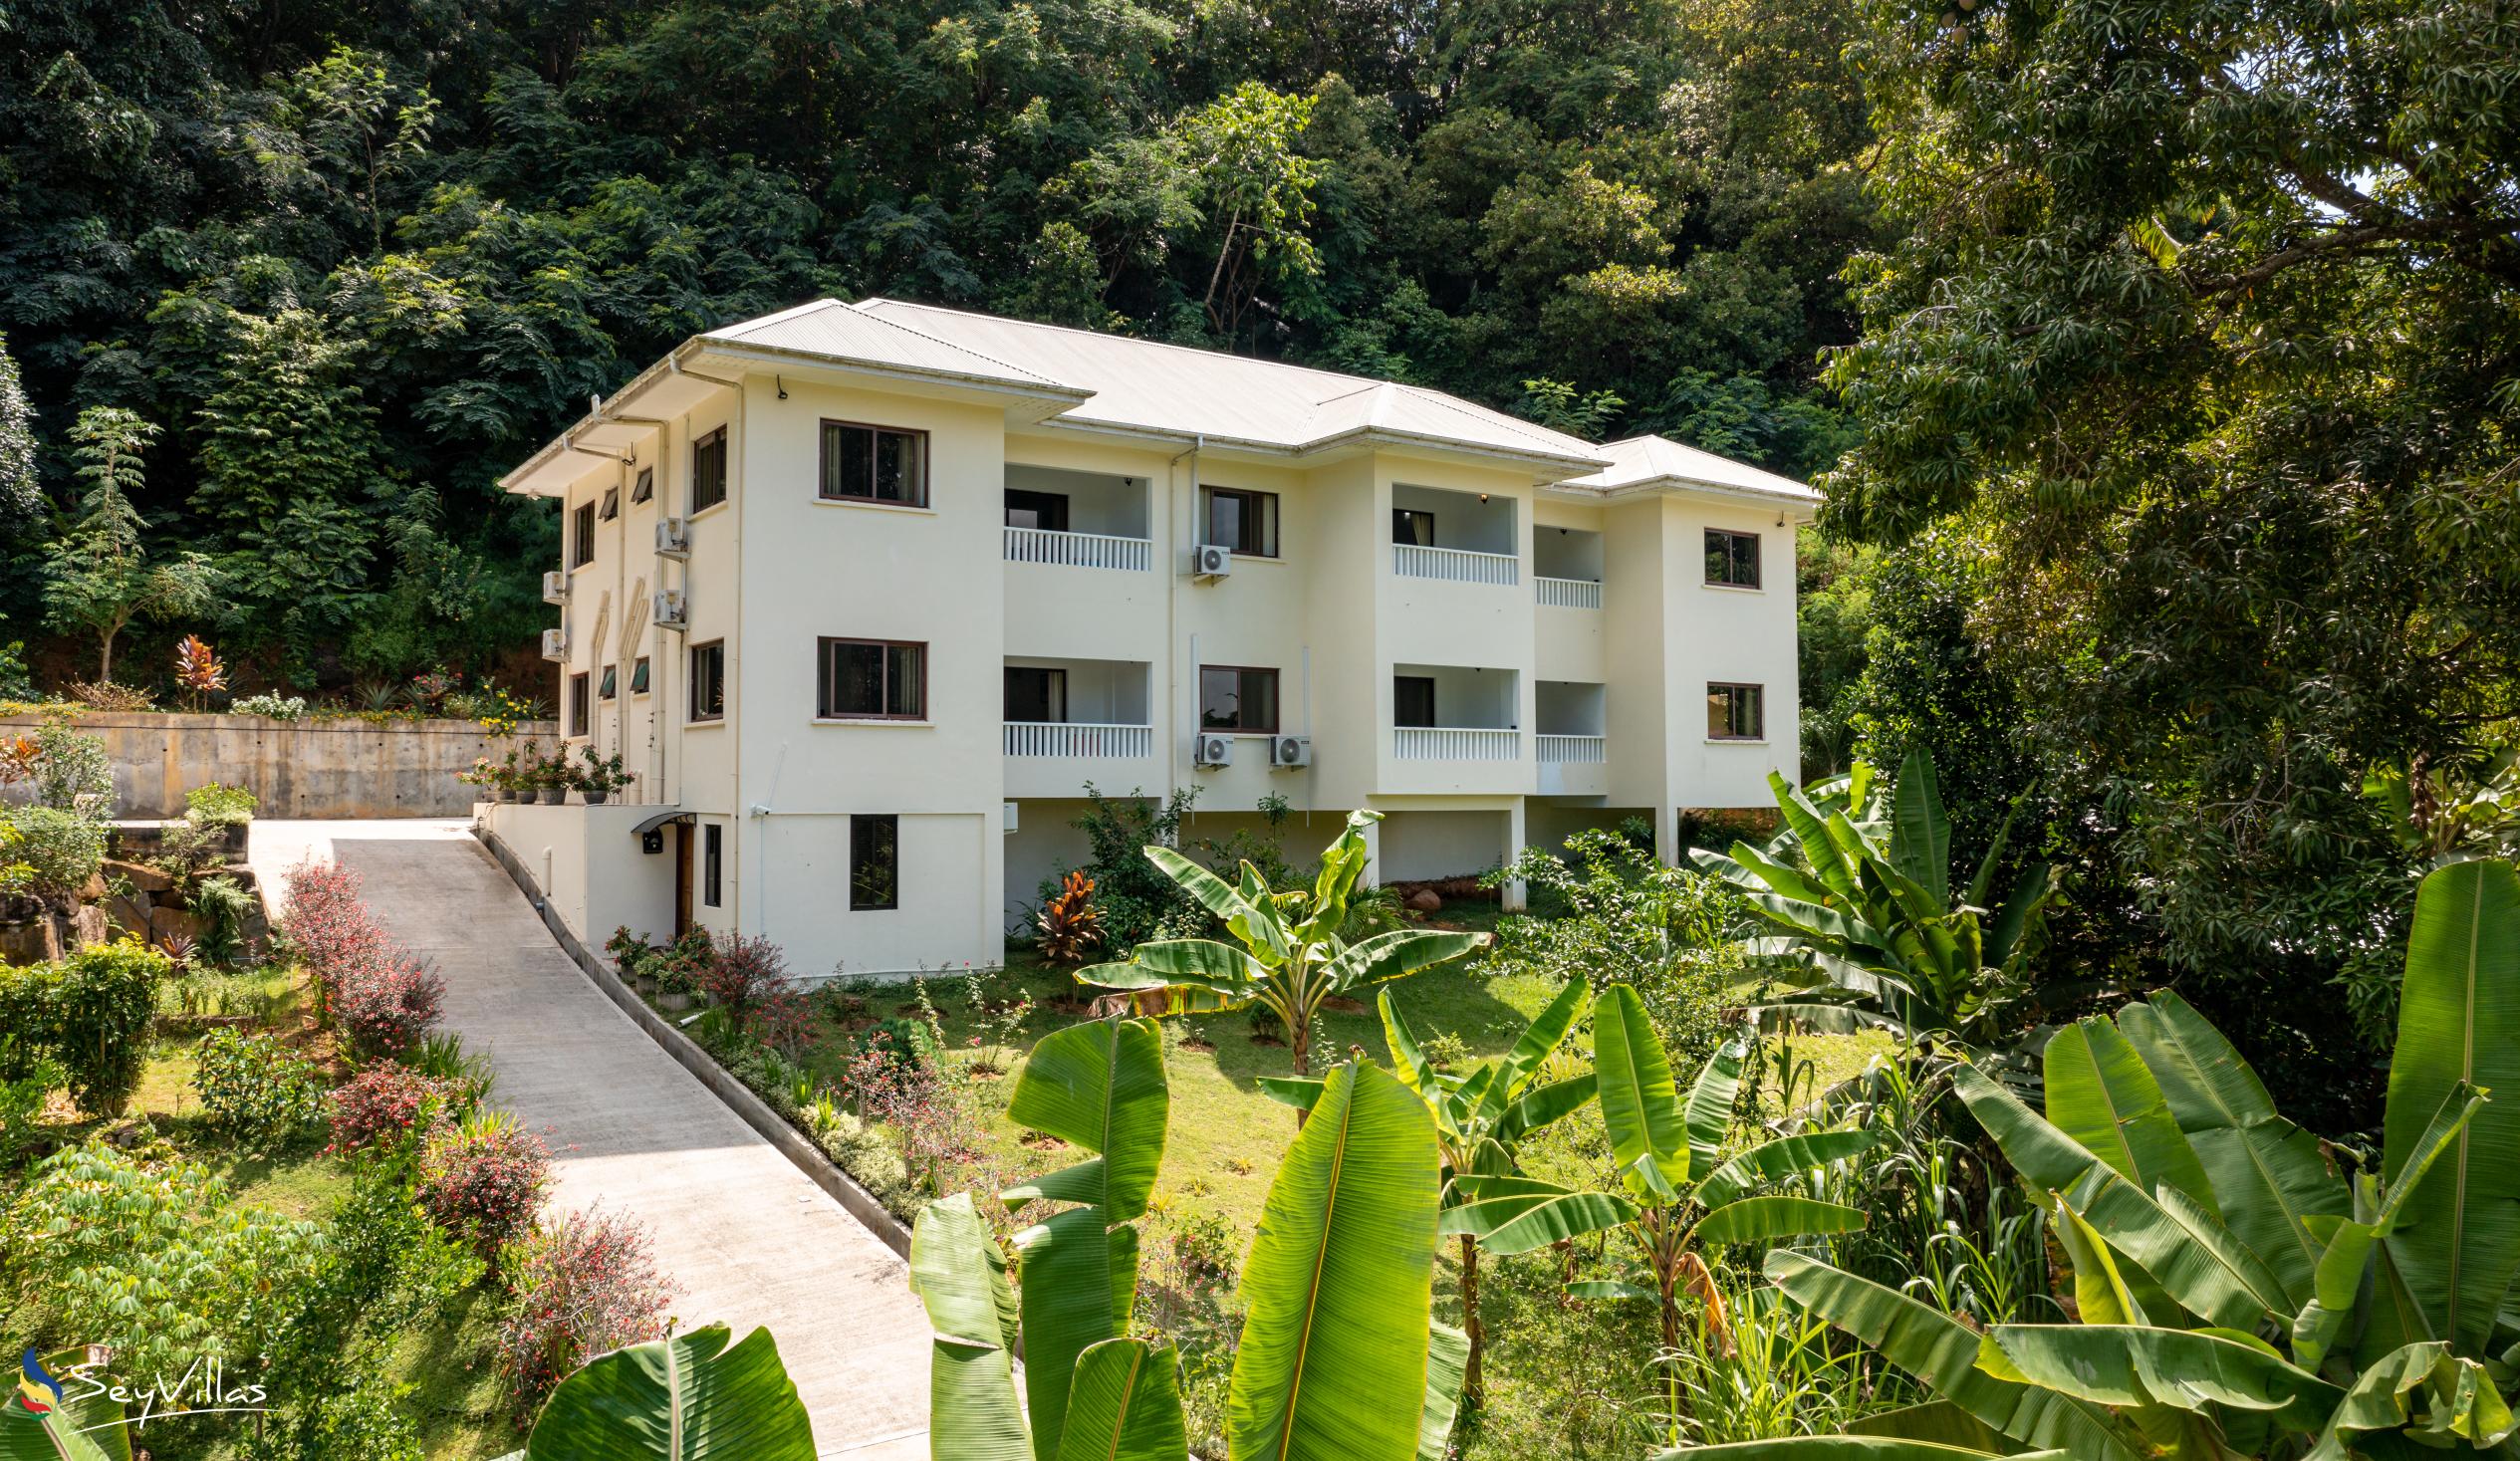 Foto 49: Kanasuk Self Catering Apartments - Aussenbereich - Mahé (Seychellen)